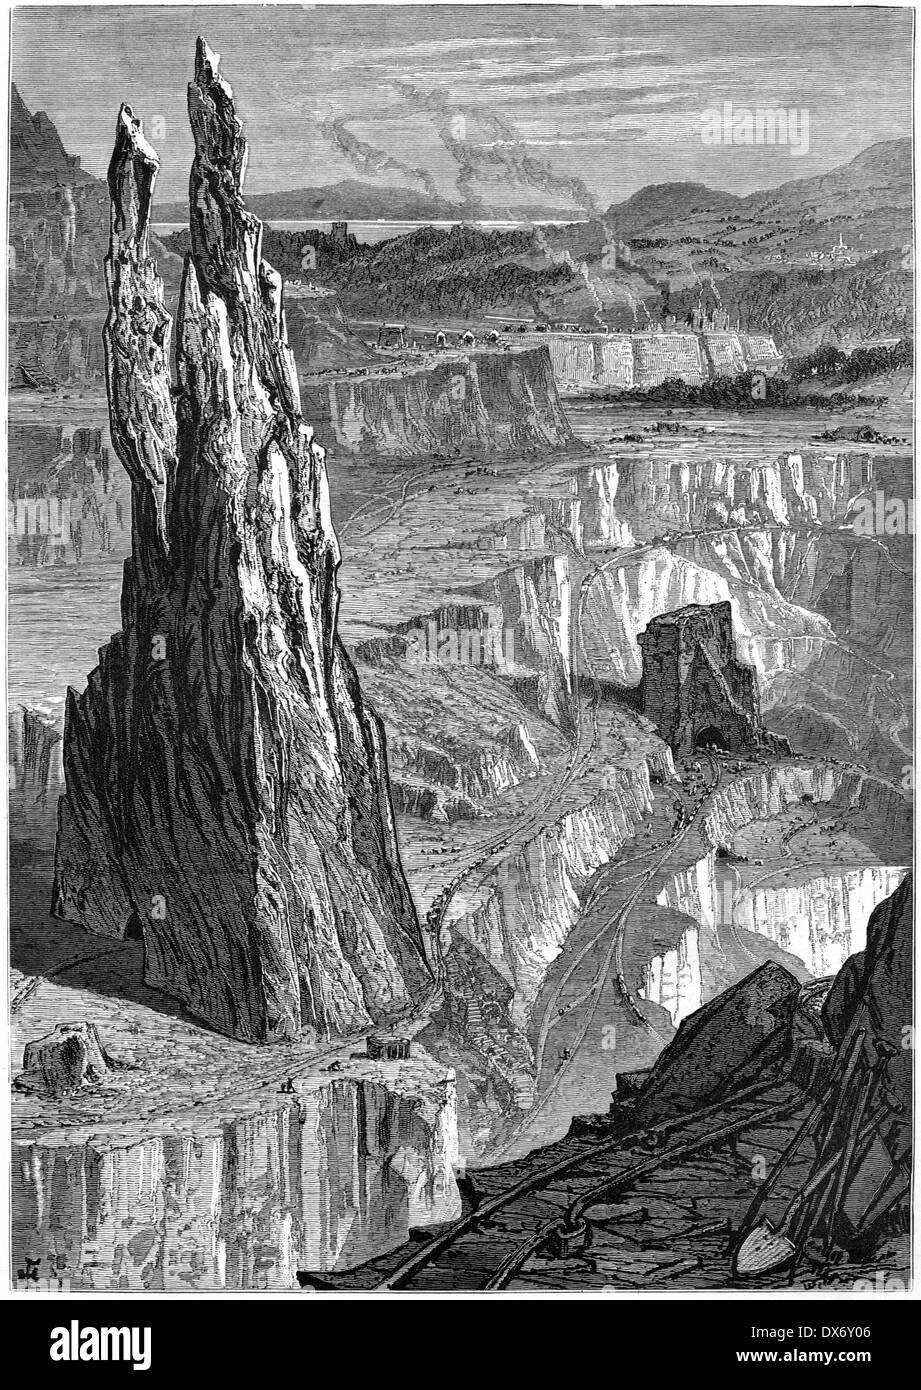 Eine Gravur mit dem Titel „Penrhyn Slate Quarries“, die in hoher Auflösung aus einem 1880 erschienenen Buch gescannt wurde. Urheberrechtlich geschützt. Stockfoto